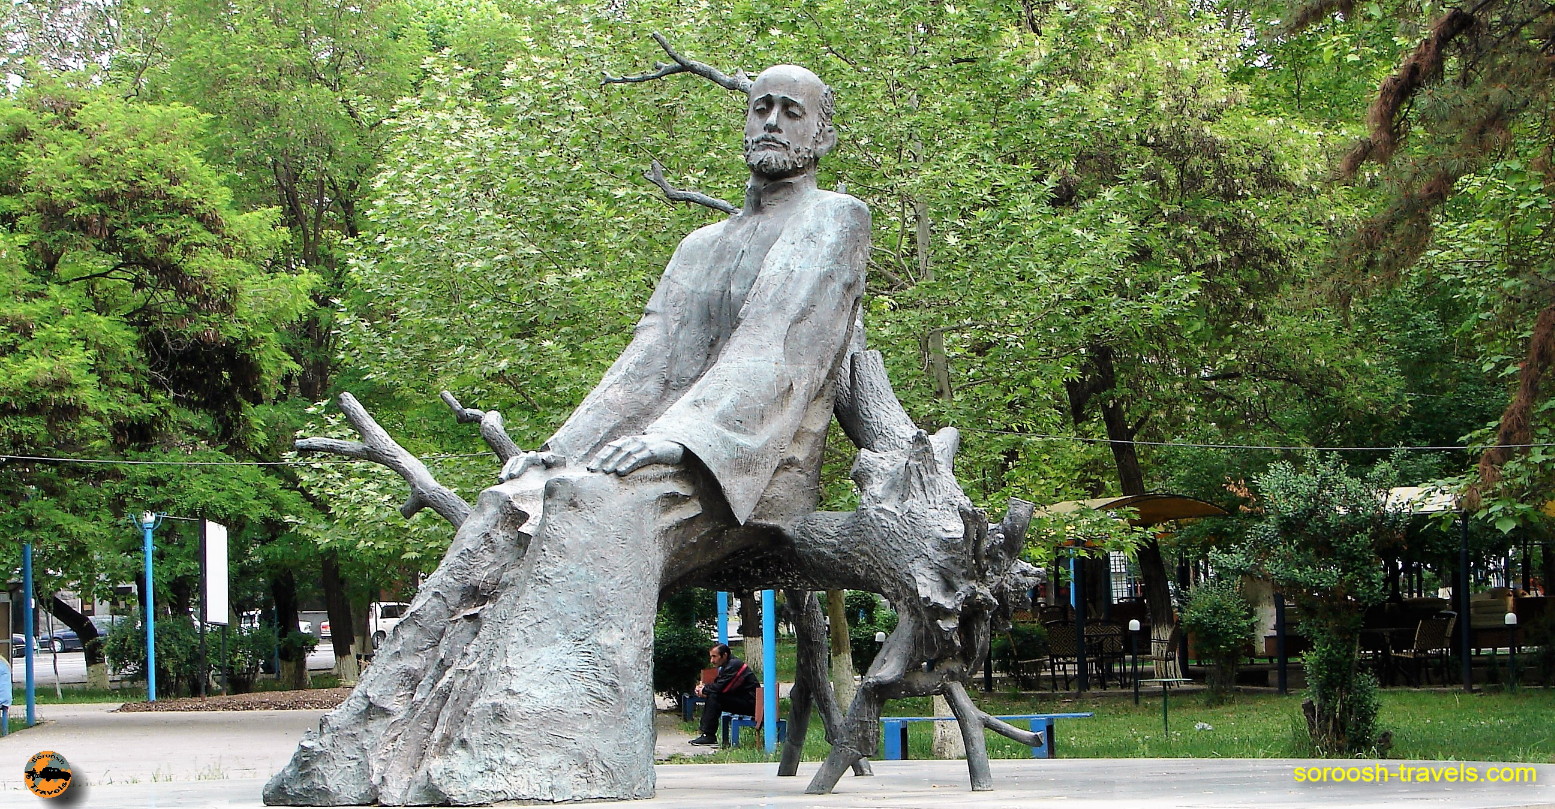  ایروان - ارمنستان - بهار ۱۳۸۷